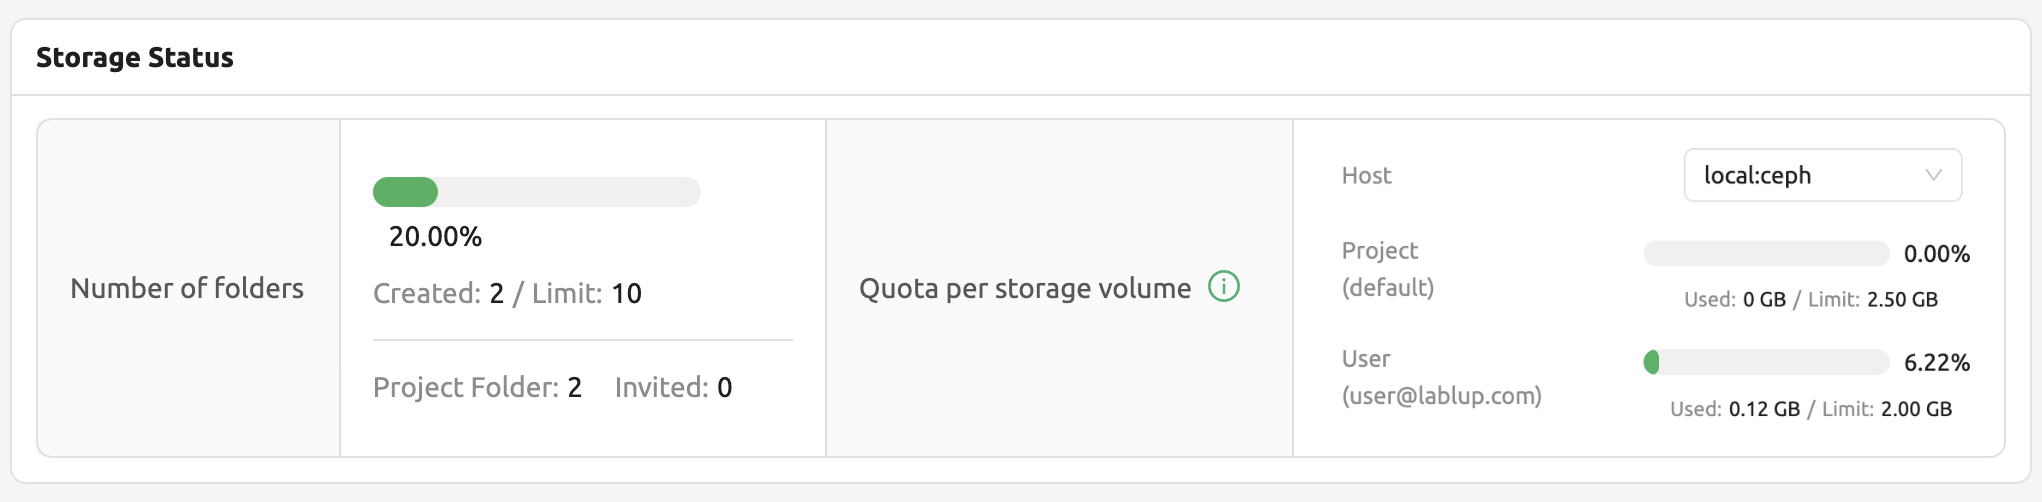 Storage status in Storage page